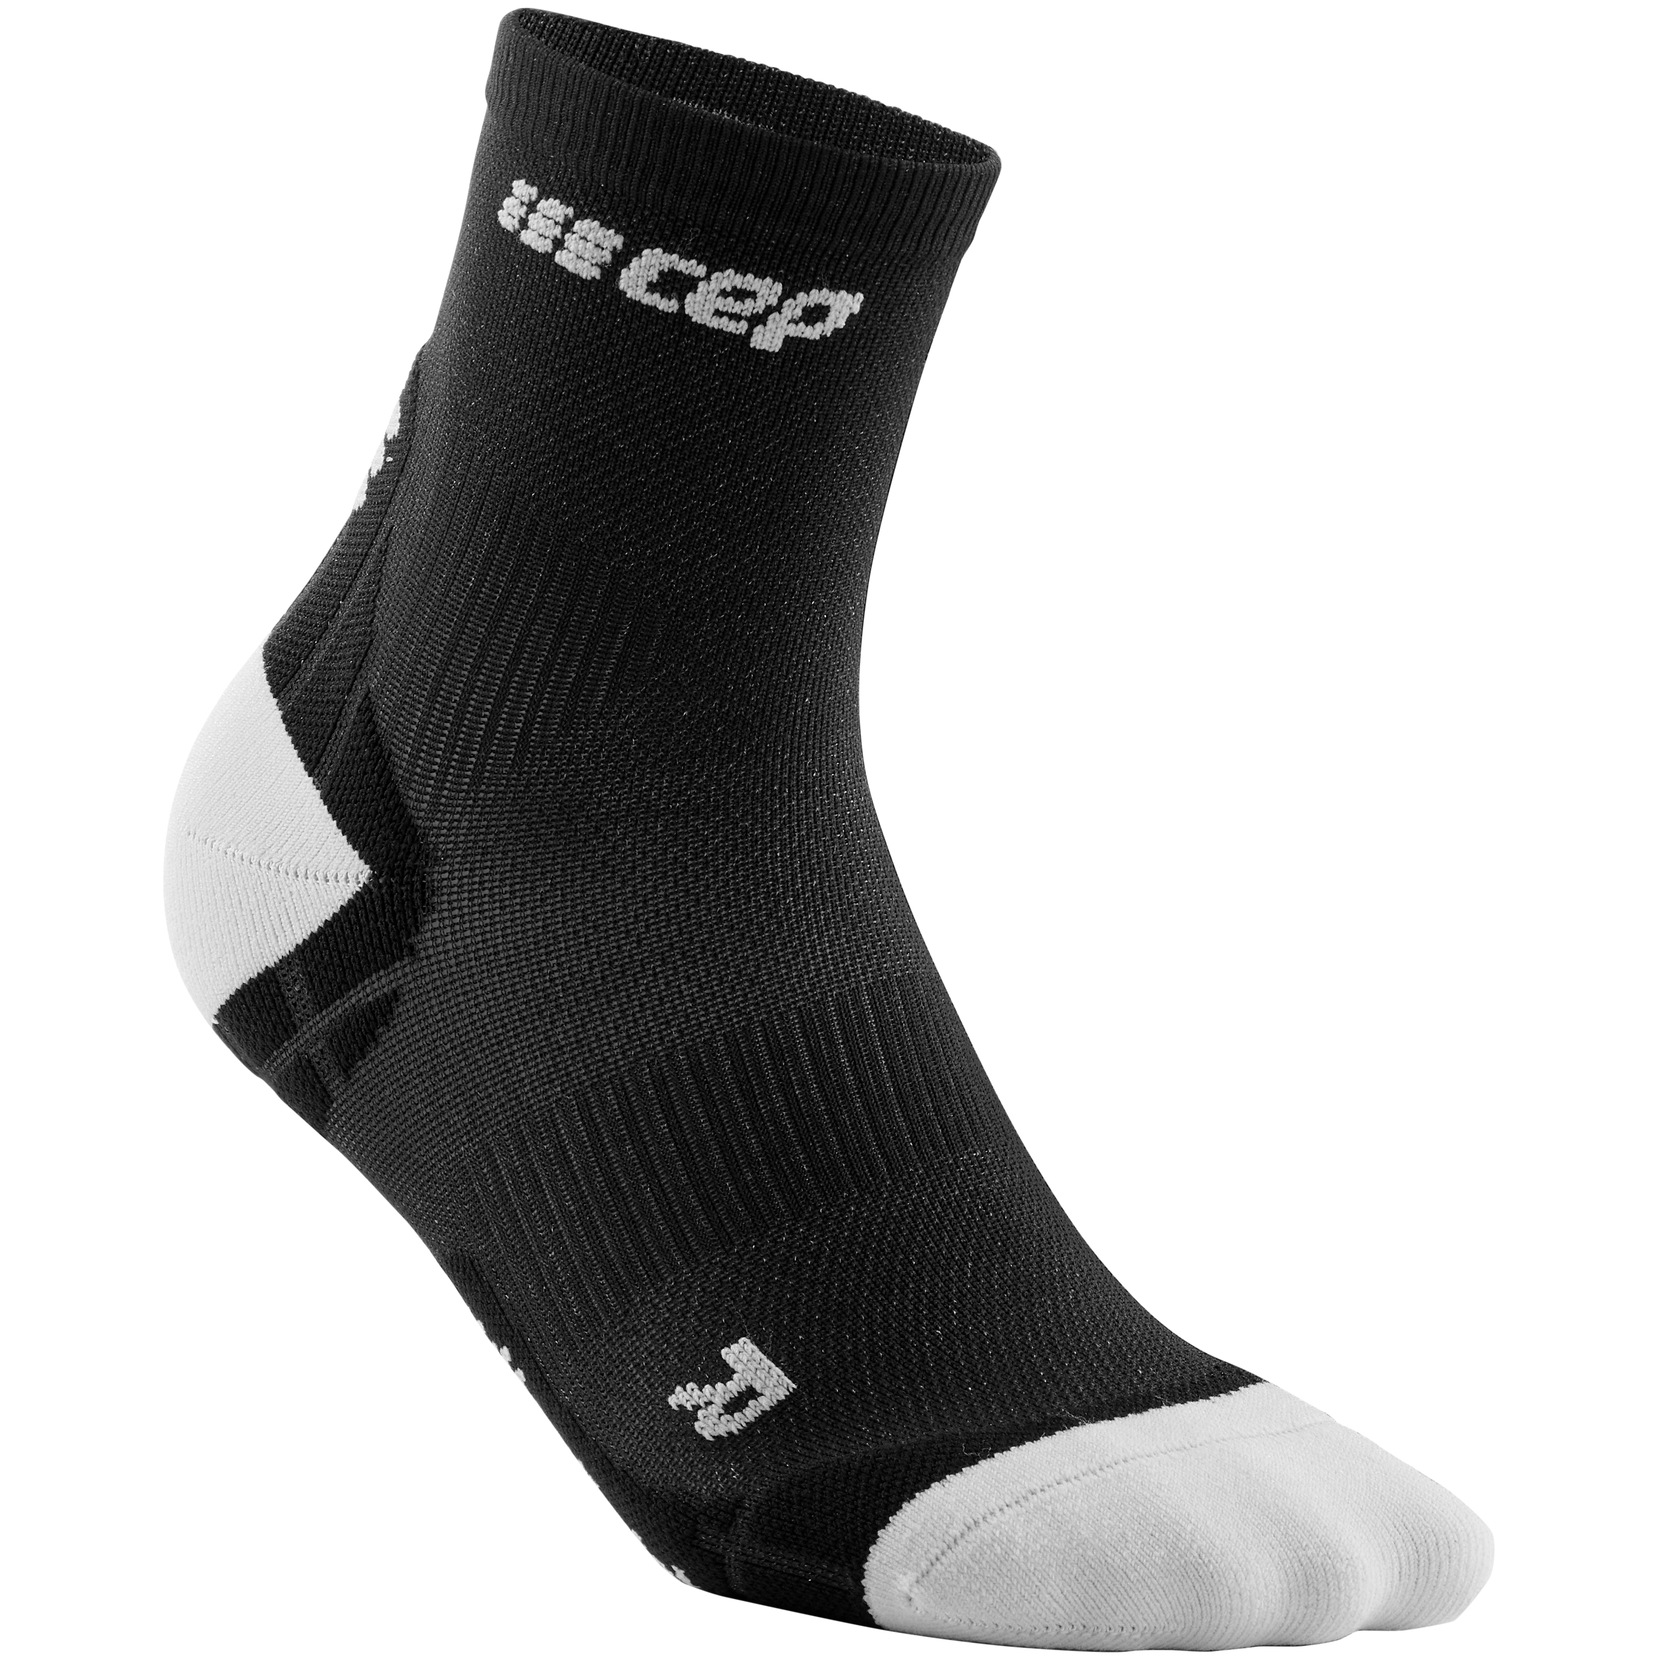 https://images.bike24.com/i/mb/5d/70/4f/cep-ultralight-compression-short-socks-for-men-black-light-grey-4-1018791.jpg